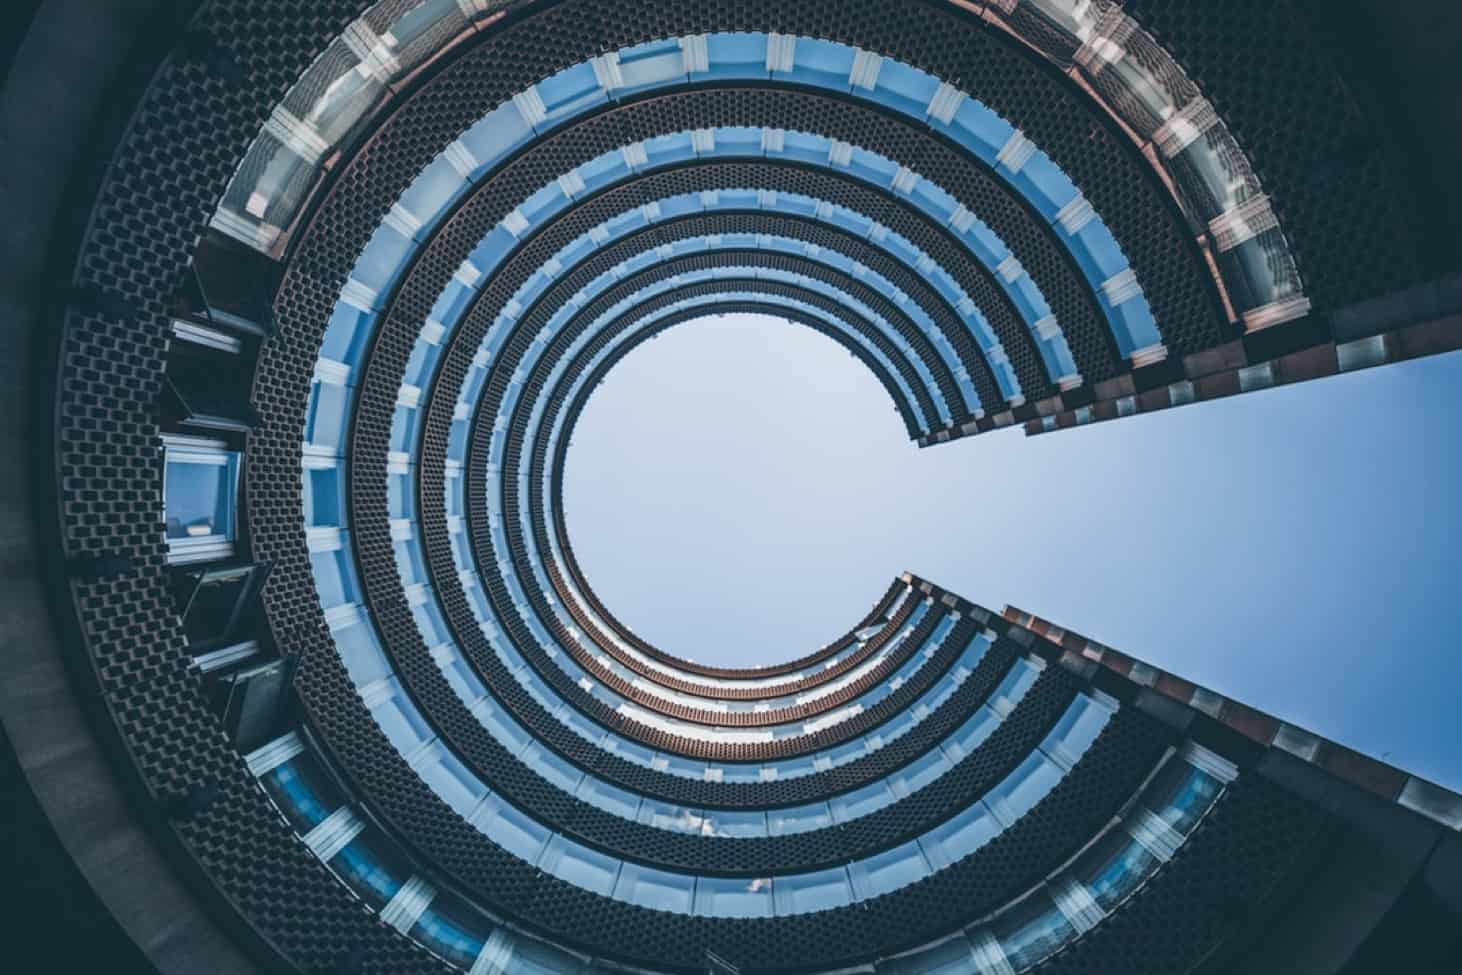 Circular Building and Sky